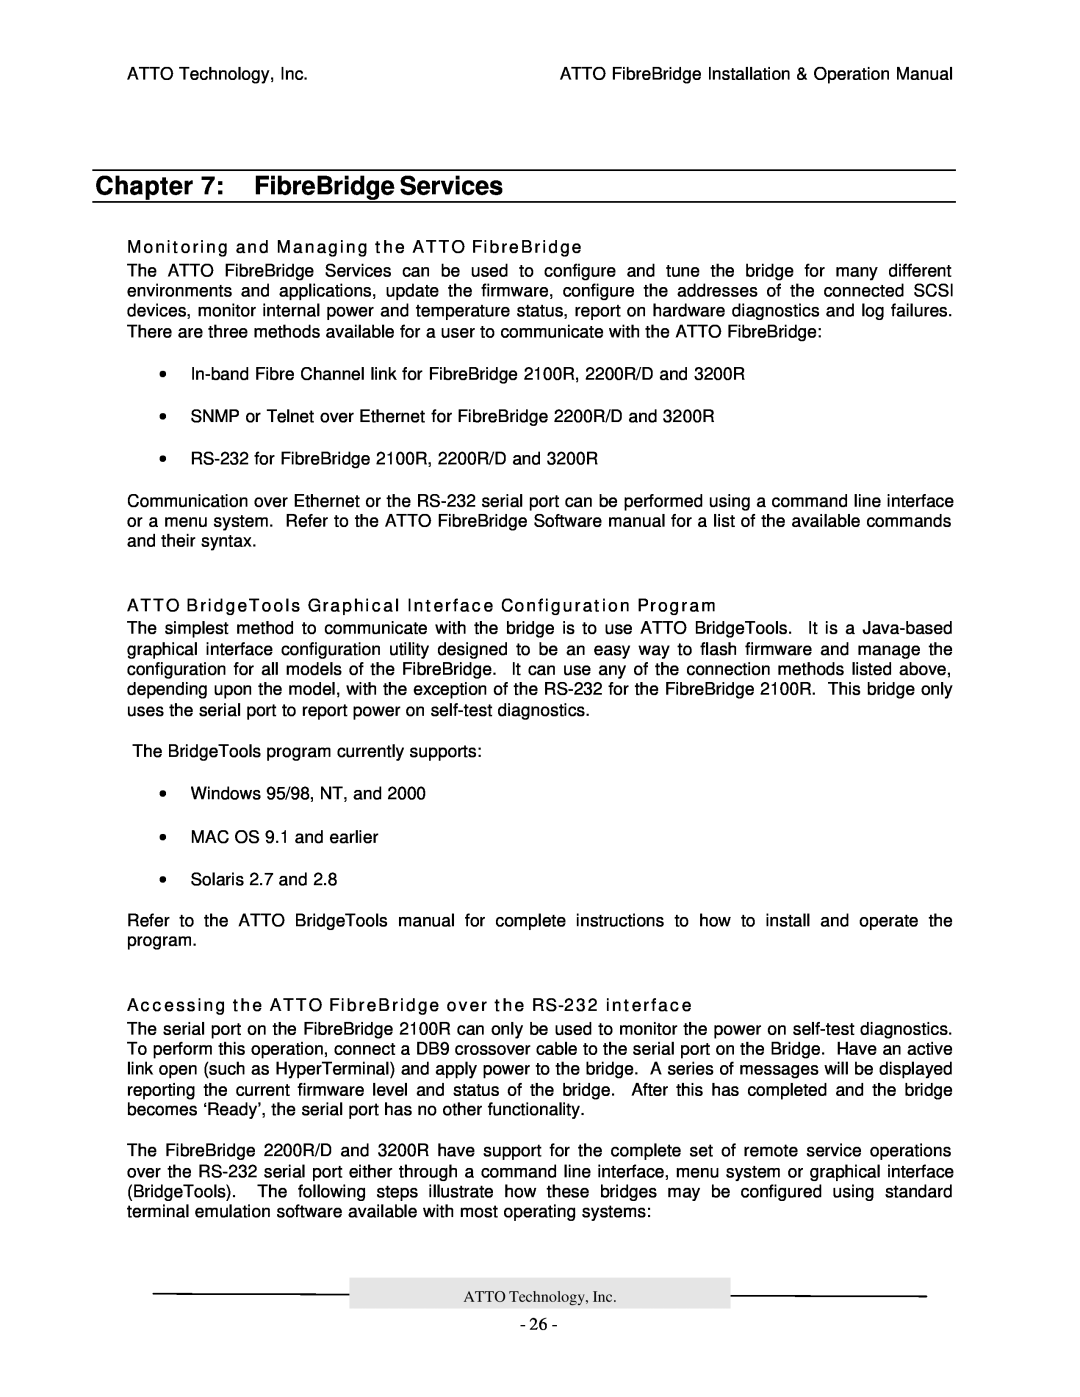 ATTO Technology 2200R/D, 3200R, 2100R manual FibreBridge Services, Monitoring and Managing the ATTO FibreBridge 